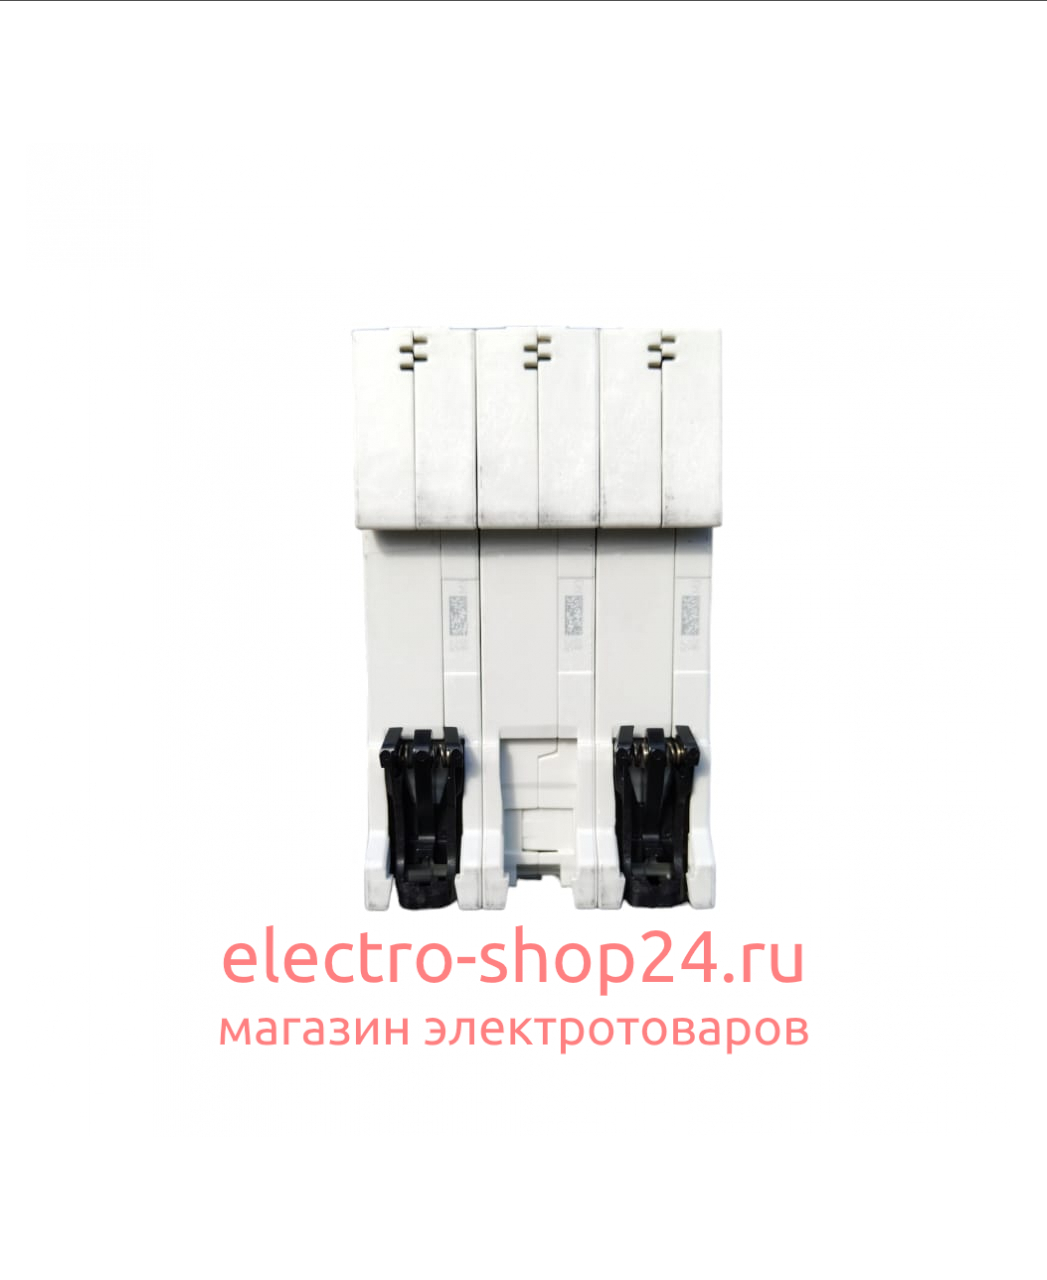 S203 C20 Автоматический выключатель 3-полюсный 20А 6кА (хар-ка C) ABB 2CDS253001R0204 2CDS253001R0204 - магазин электротехники Electroshop